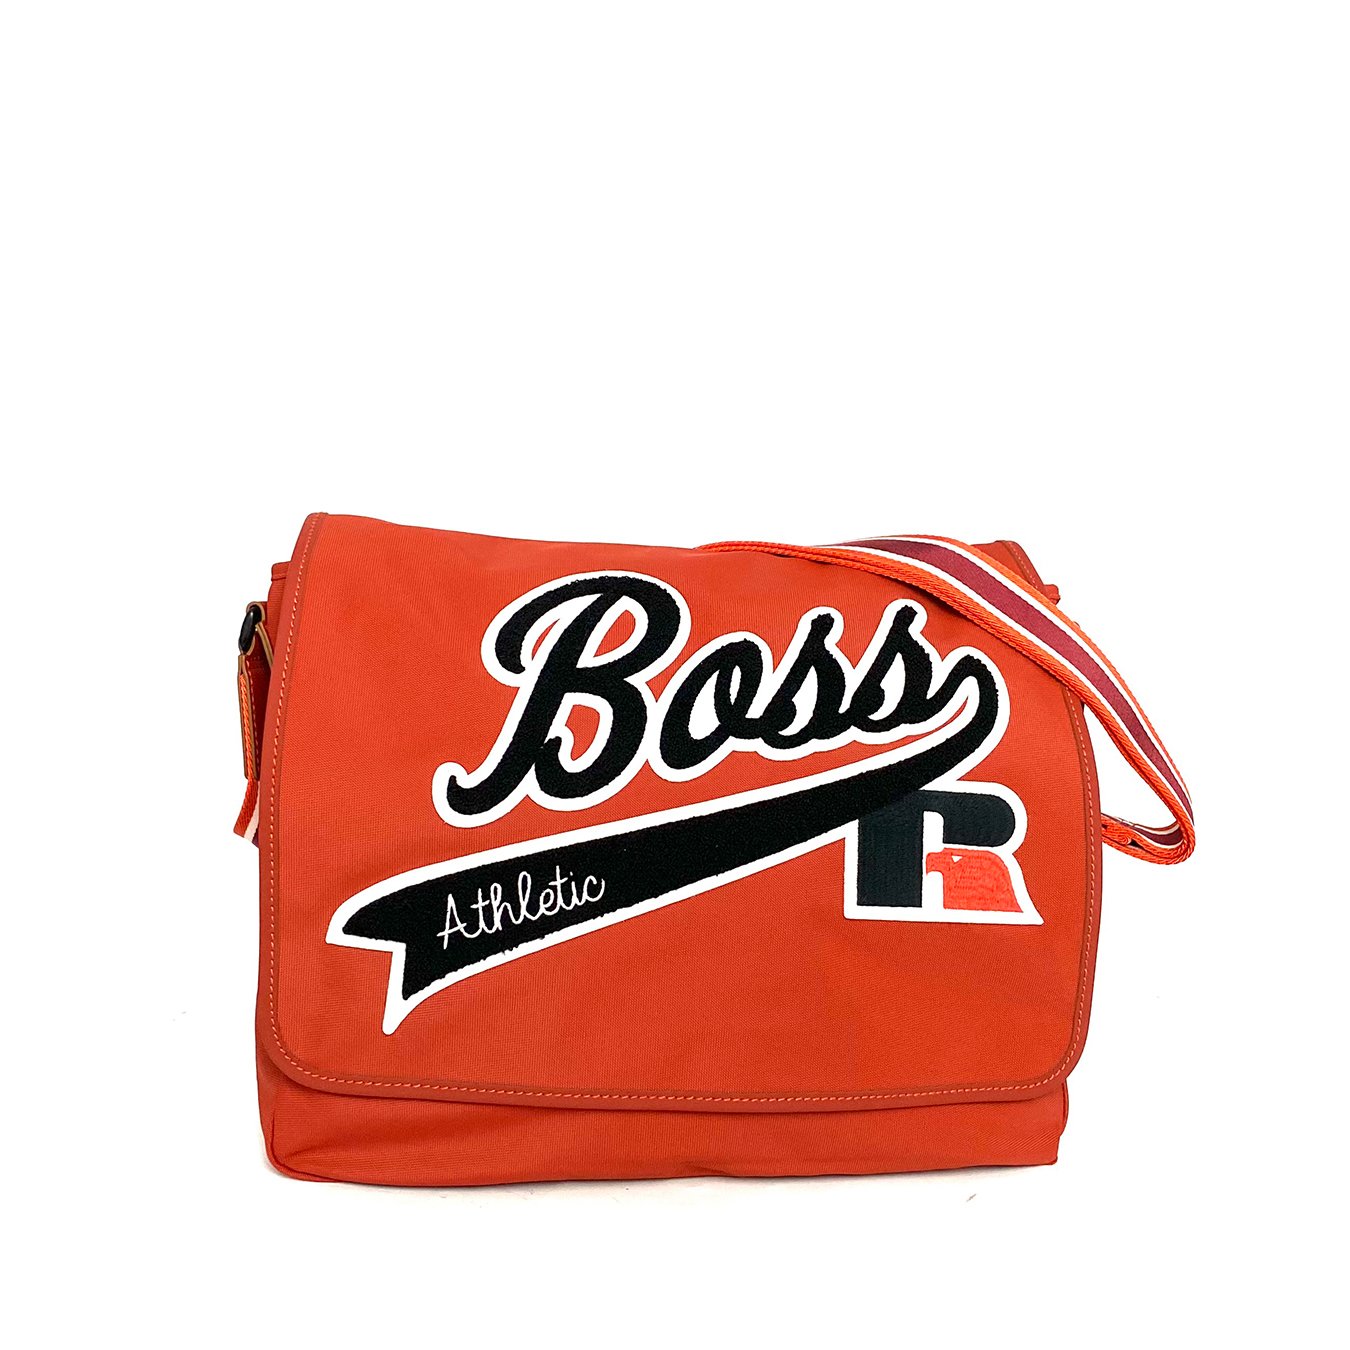 Hugo Boss Messenger Bag With Logo Red Nylon